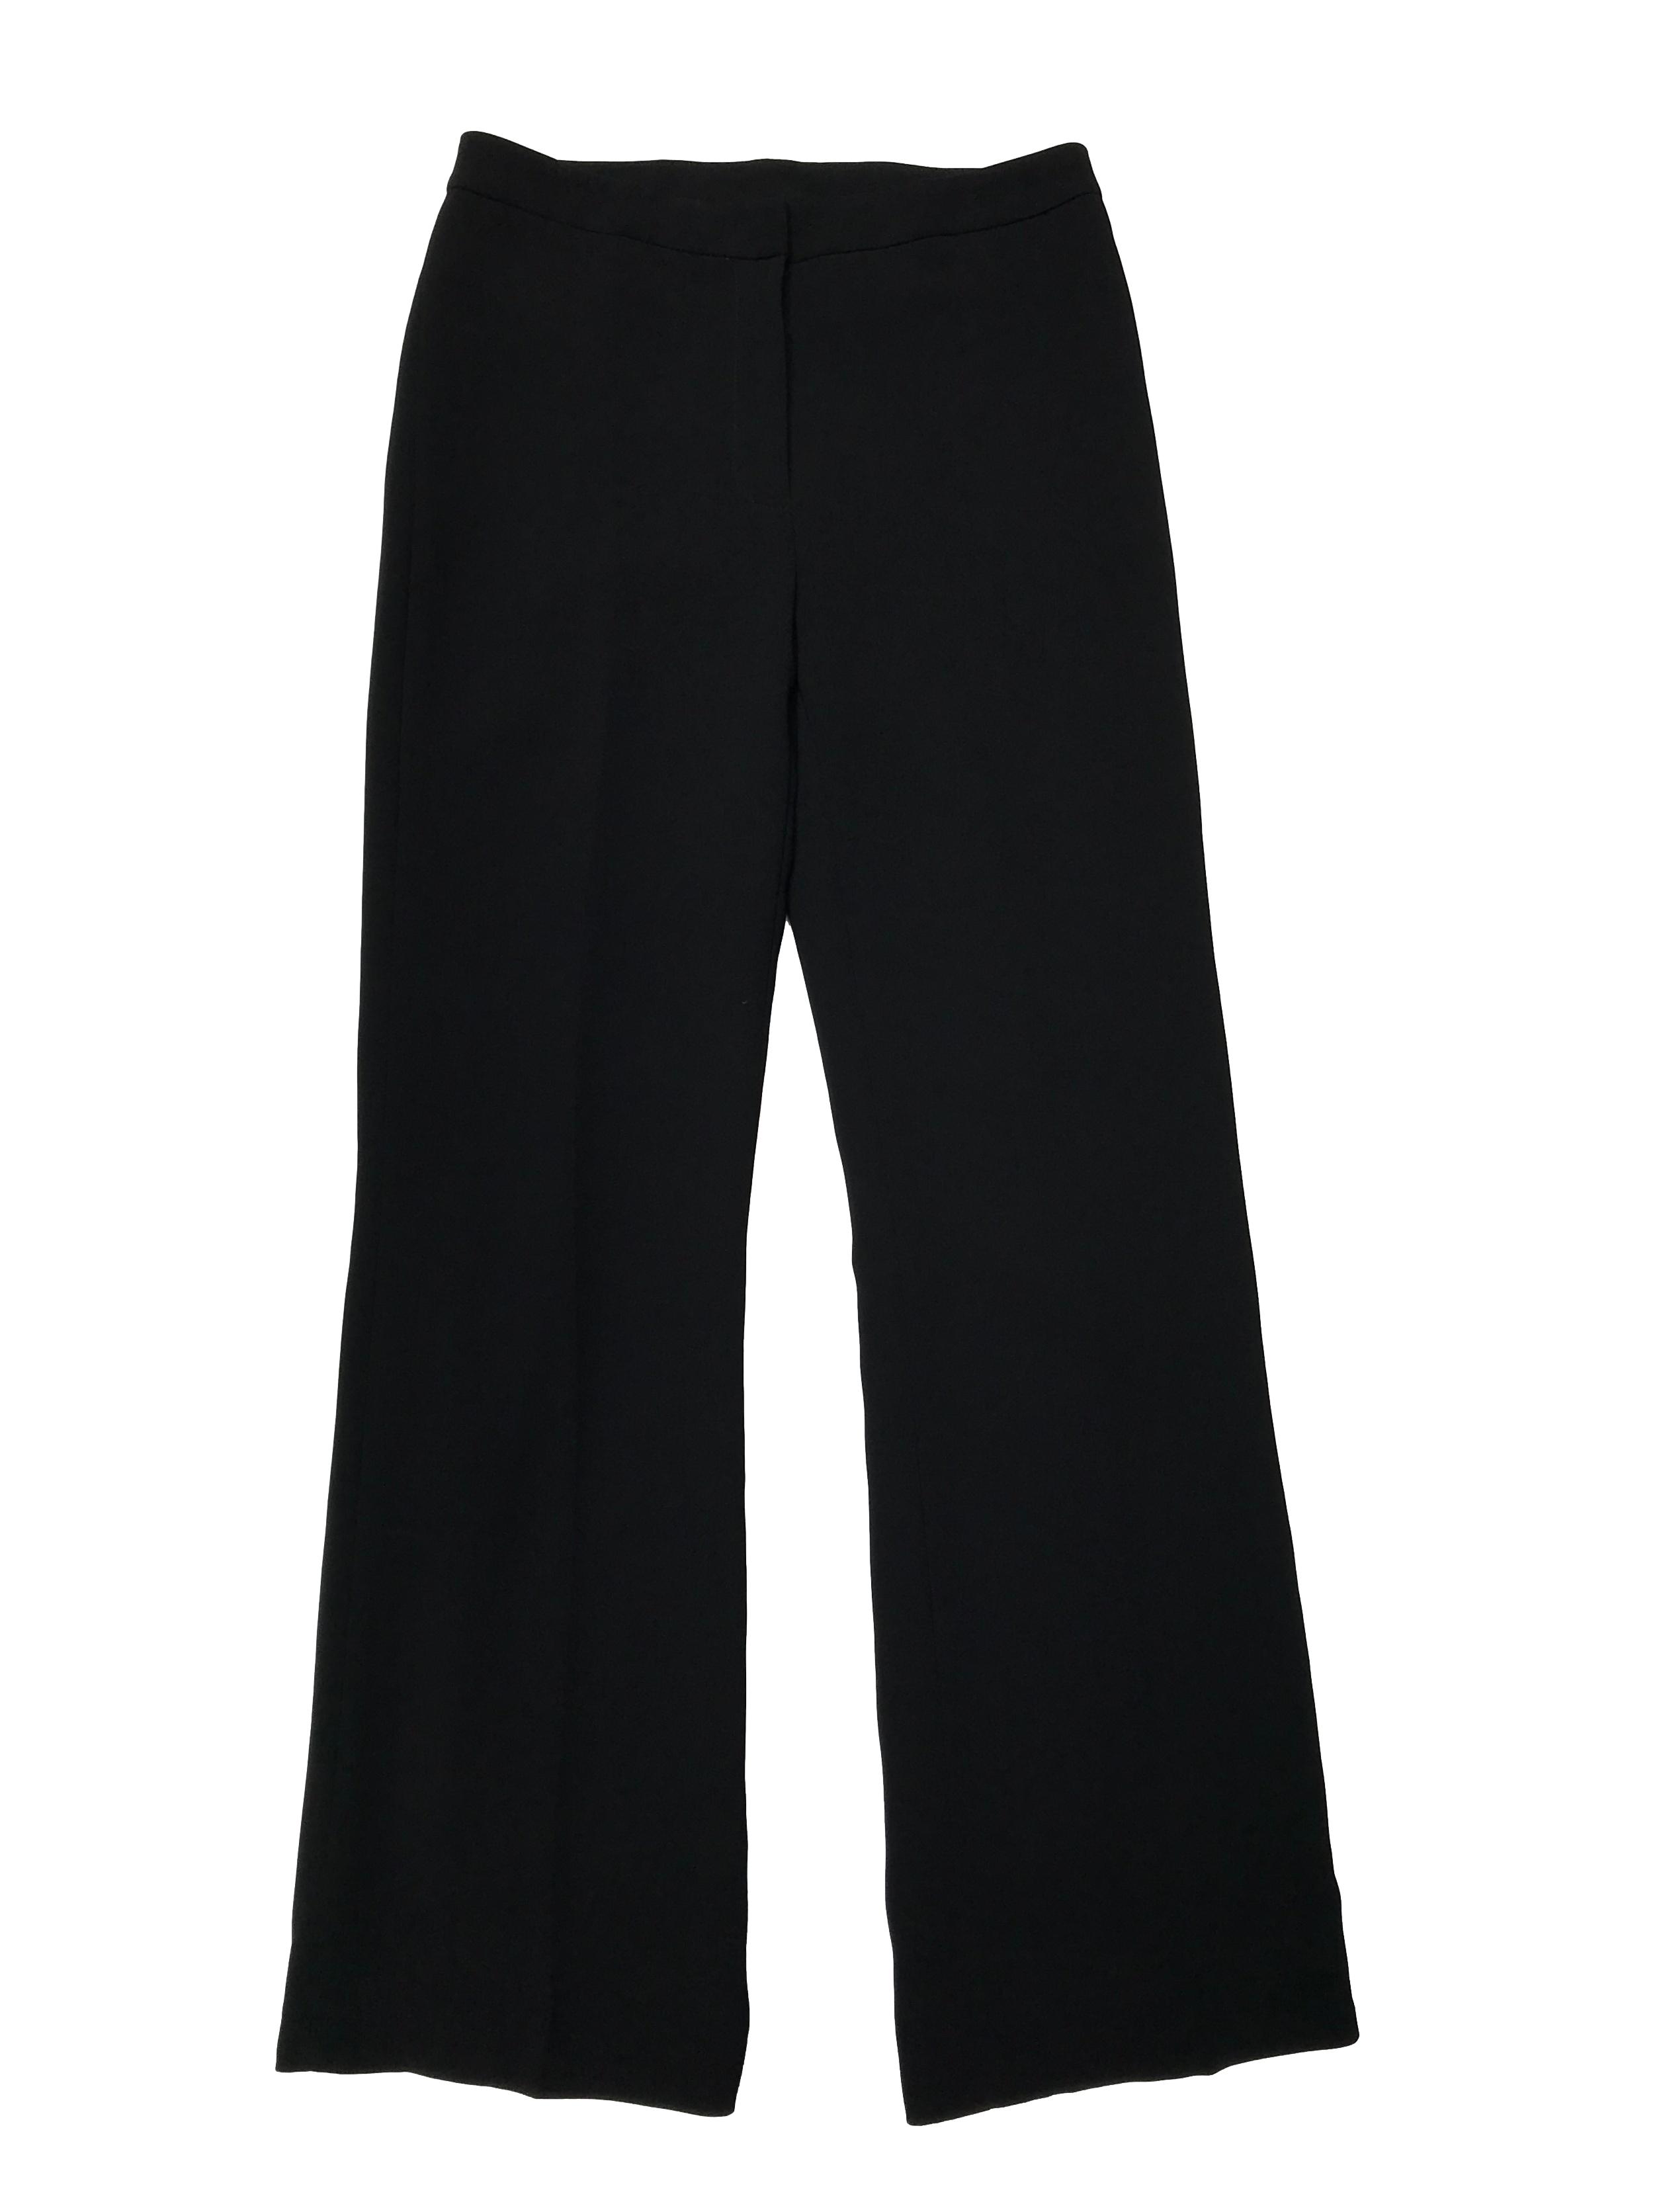 Pantalón Tahari negro de tiro medio, corte recto, forrado, con broche botón y cierre delanteros. Pretina 72cm Largo 102cm. Precio original S/ 350